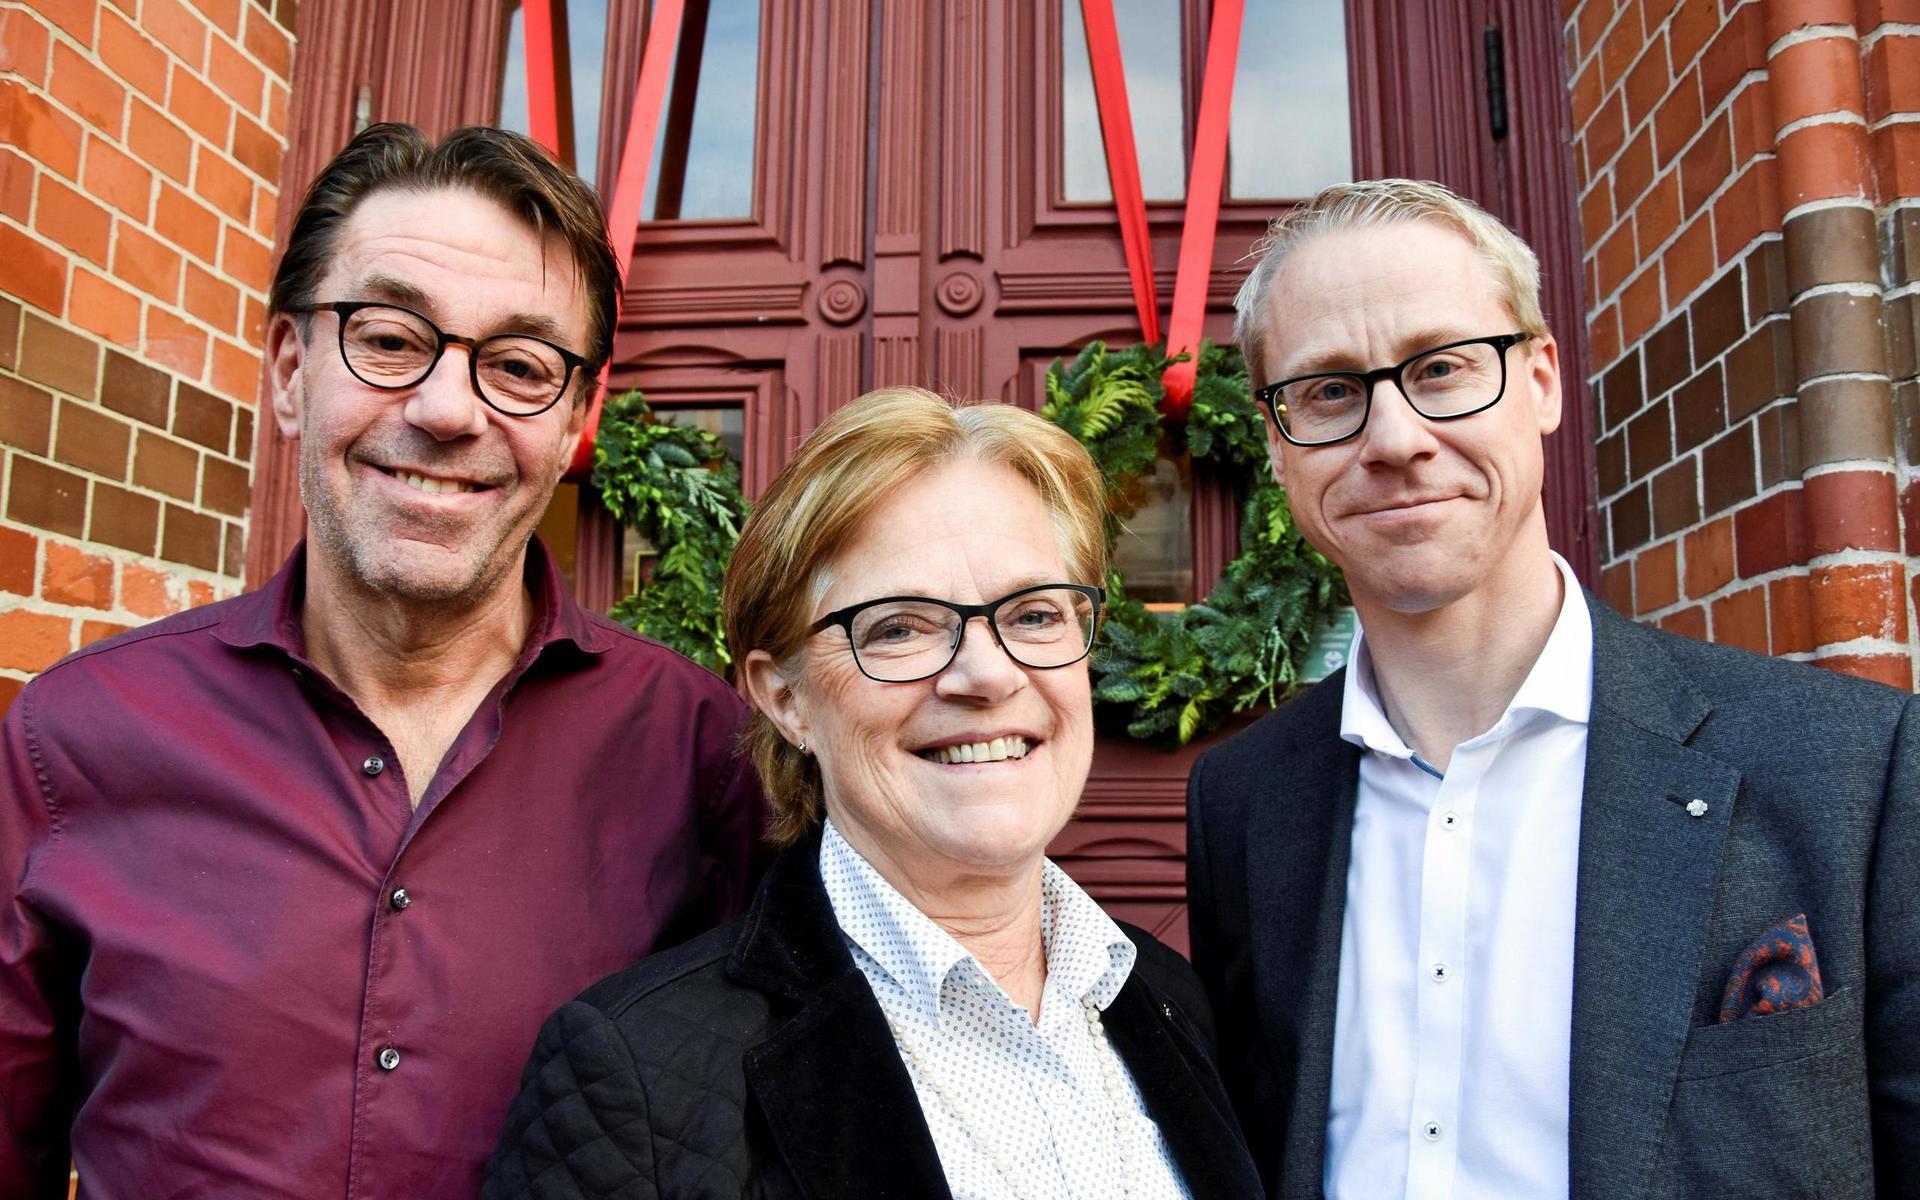 Beslutet togs av kommunalstyrelsens arbetsutskott. Där ingår Jana Nilsson (S), Ann-Charlotte Stenkil (M) och Christofer Bergenblock (C), samt (ej på bild) Tobias Carlsson (L) och Jeanette Qvist (S).